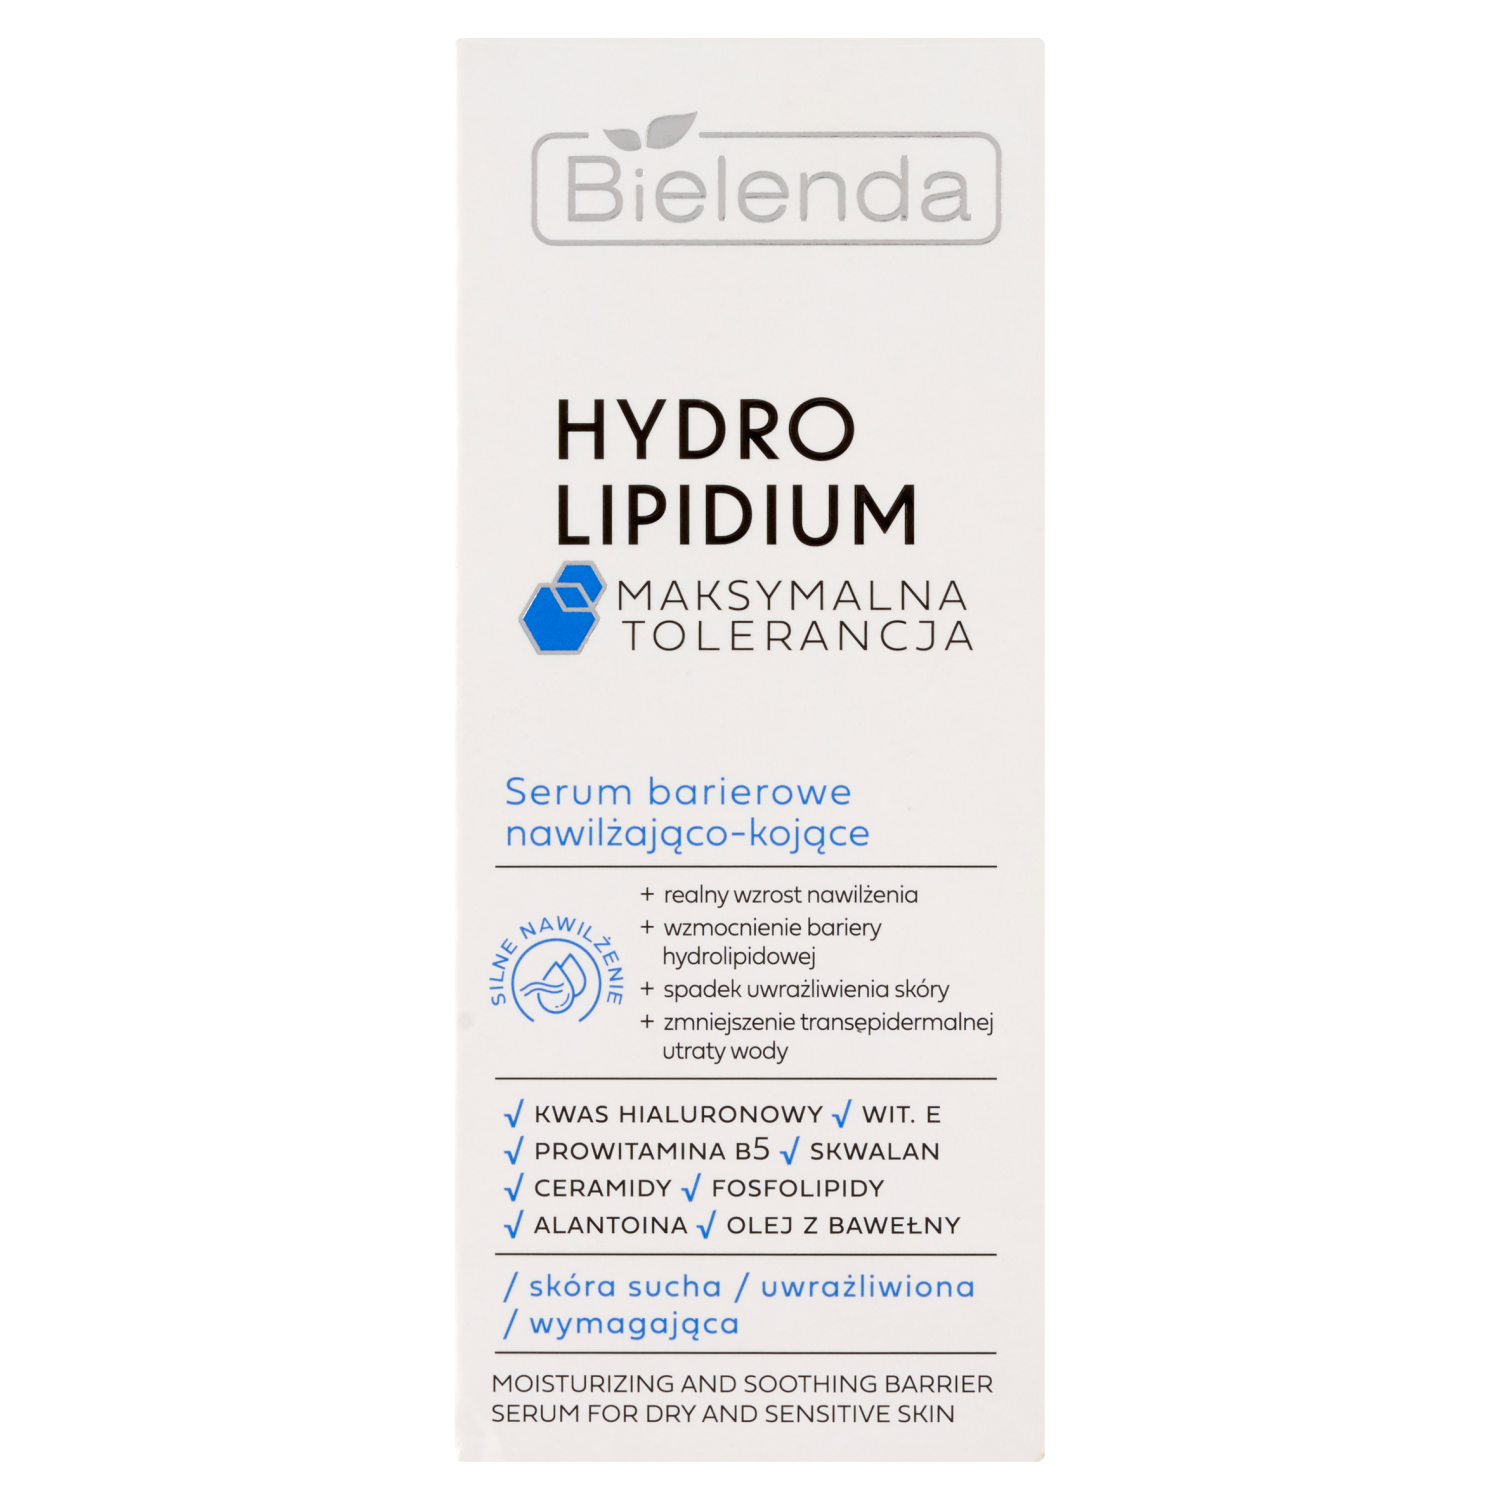 Увлажняющая и успокаивающая барьерная сыворотка для лица Bielenda Hydro Lipidium, 30 мл увлажняющий и защитный барьерный крем с spf50 для лица bielenda hydro lipidium 30 мл